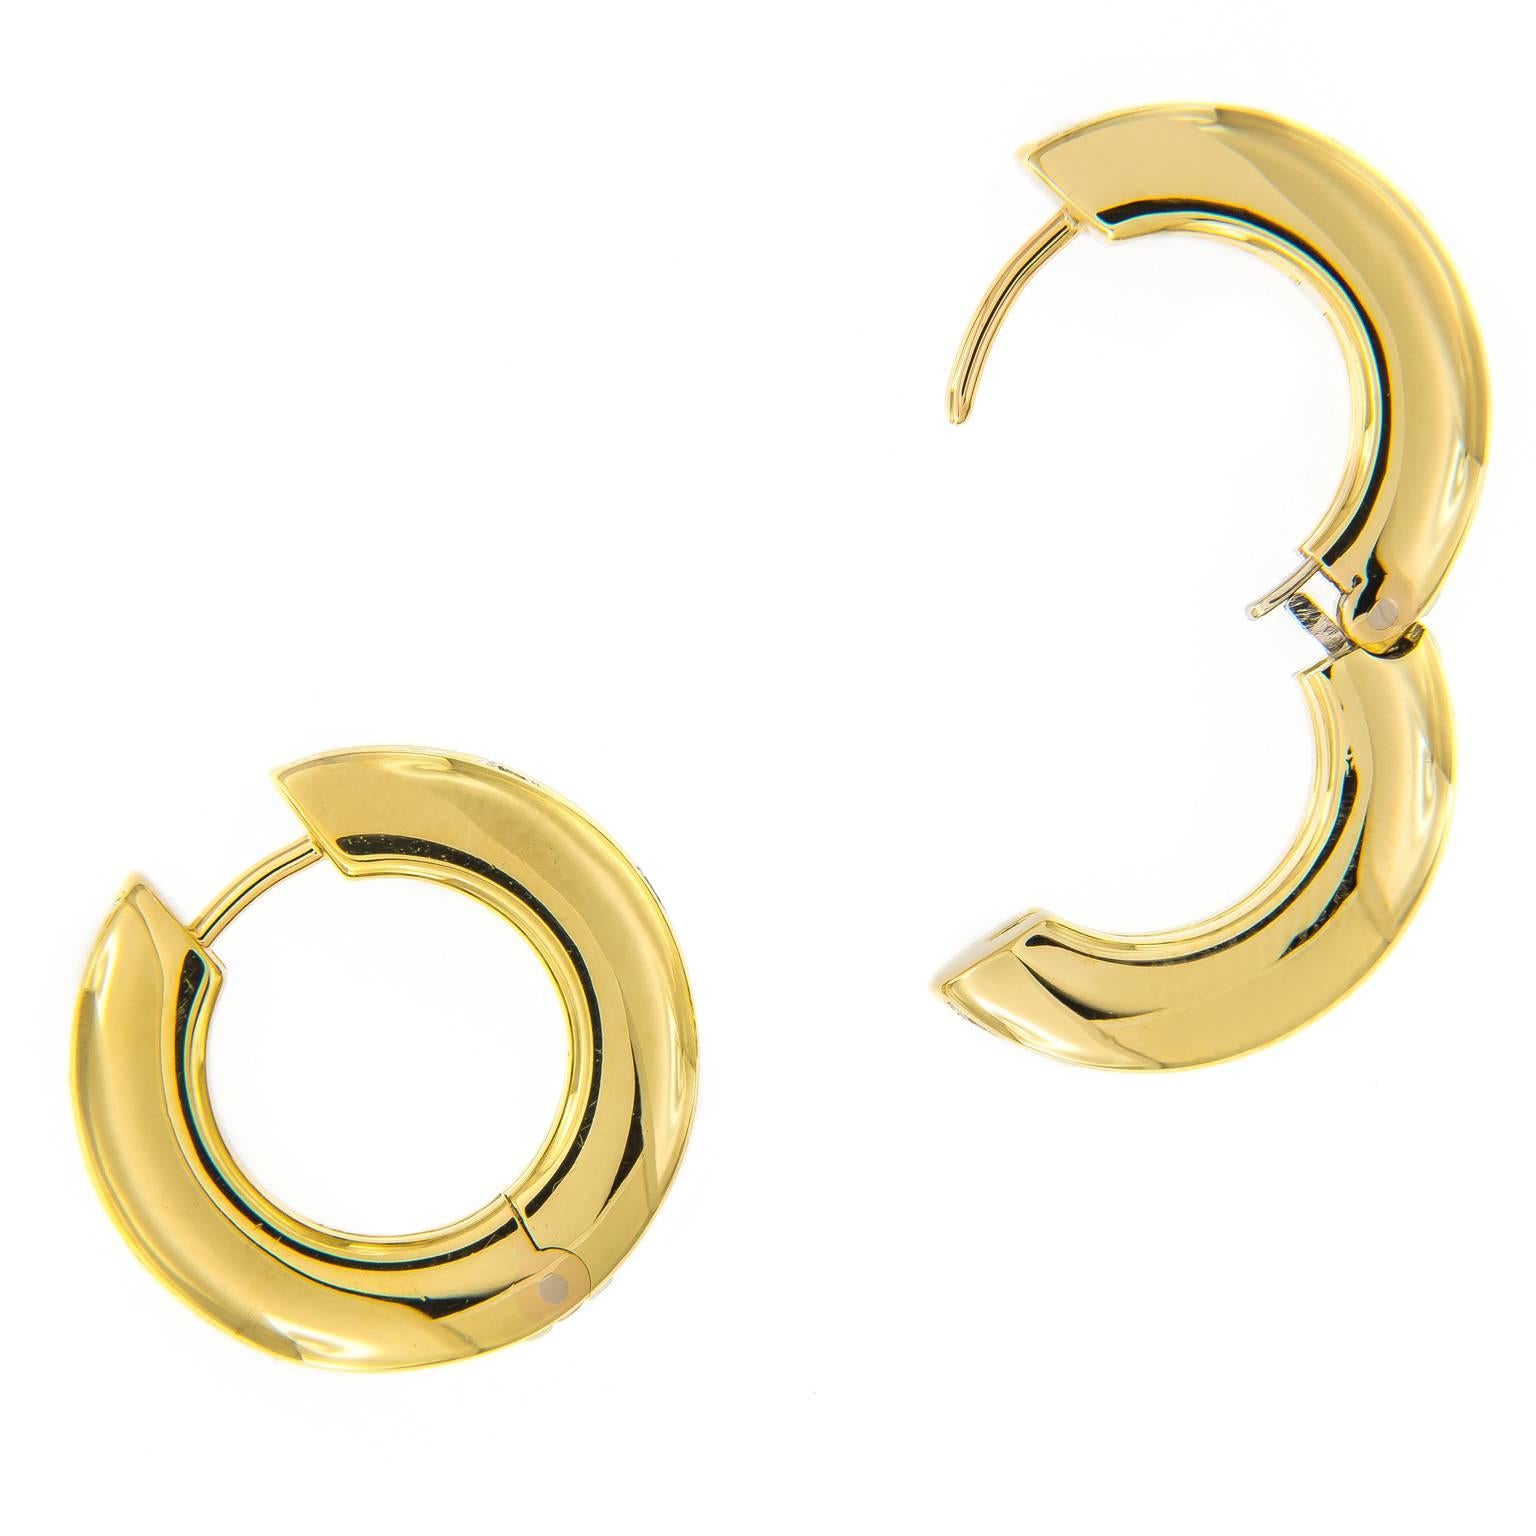 Diese dezenten und eleganten Ohrringe sind perfekt für einen Tag im Büro oder einen Abend. Mit 36 runden Diamanten im Brillantschliff und fachmännischer Handwerkskunst in 18 Karat Gelbgold mit einem einzigartigen Federscharnier. Dies werden die